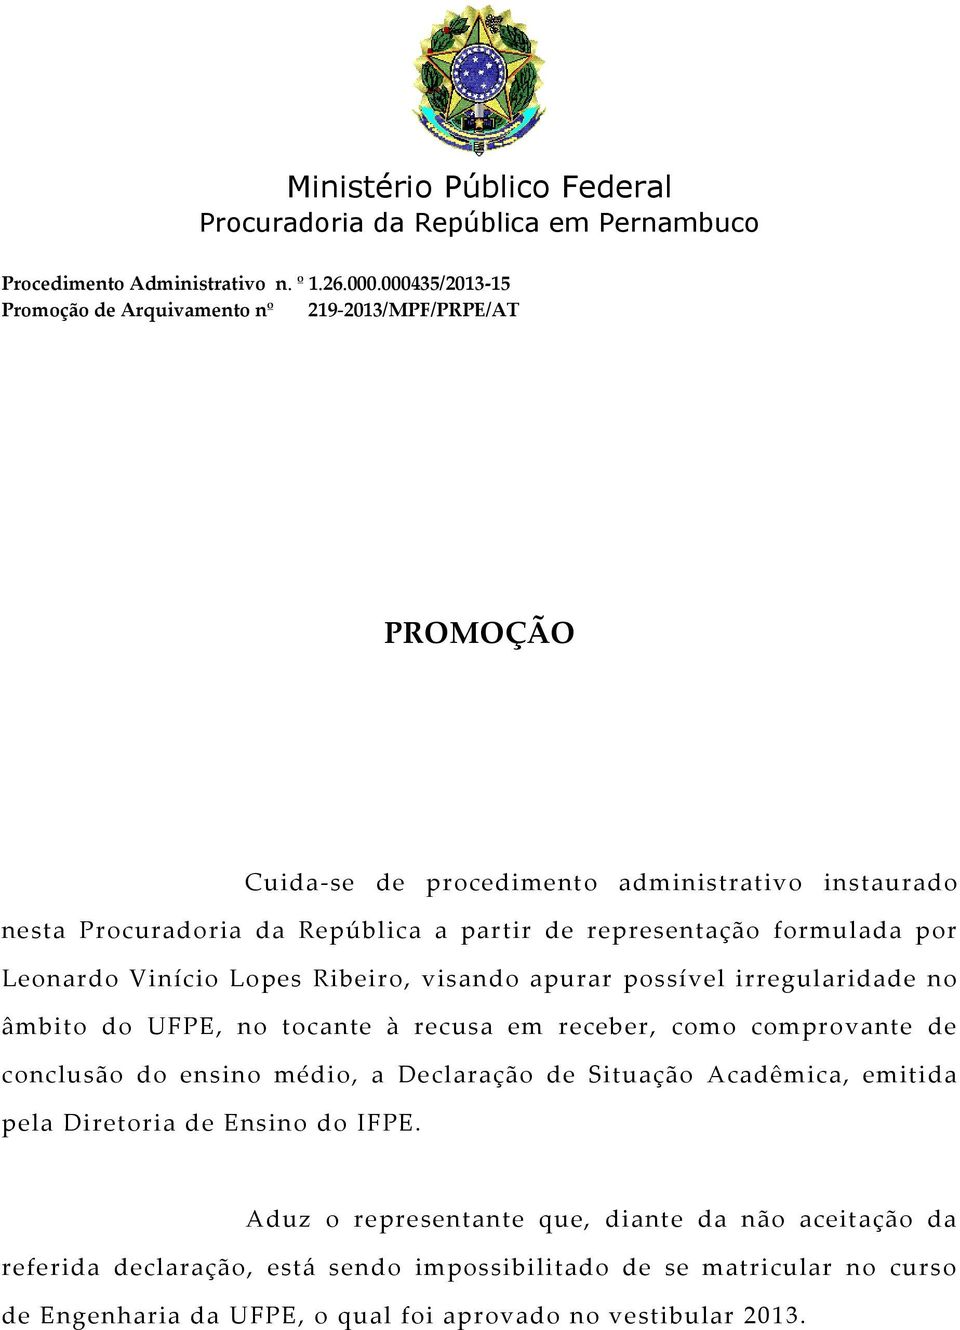 representação formulada por Leonardo Vinício Lopes Ribeiro, visando apurar possível irregularidade no âmbito do UFPE, no tocante à recusa em receber, como comprovante